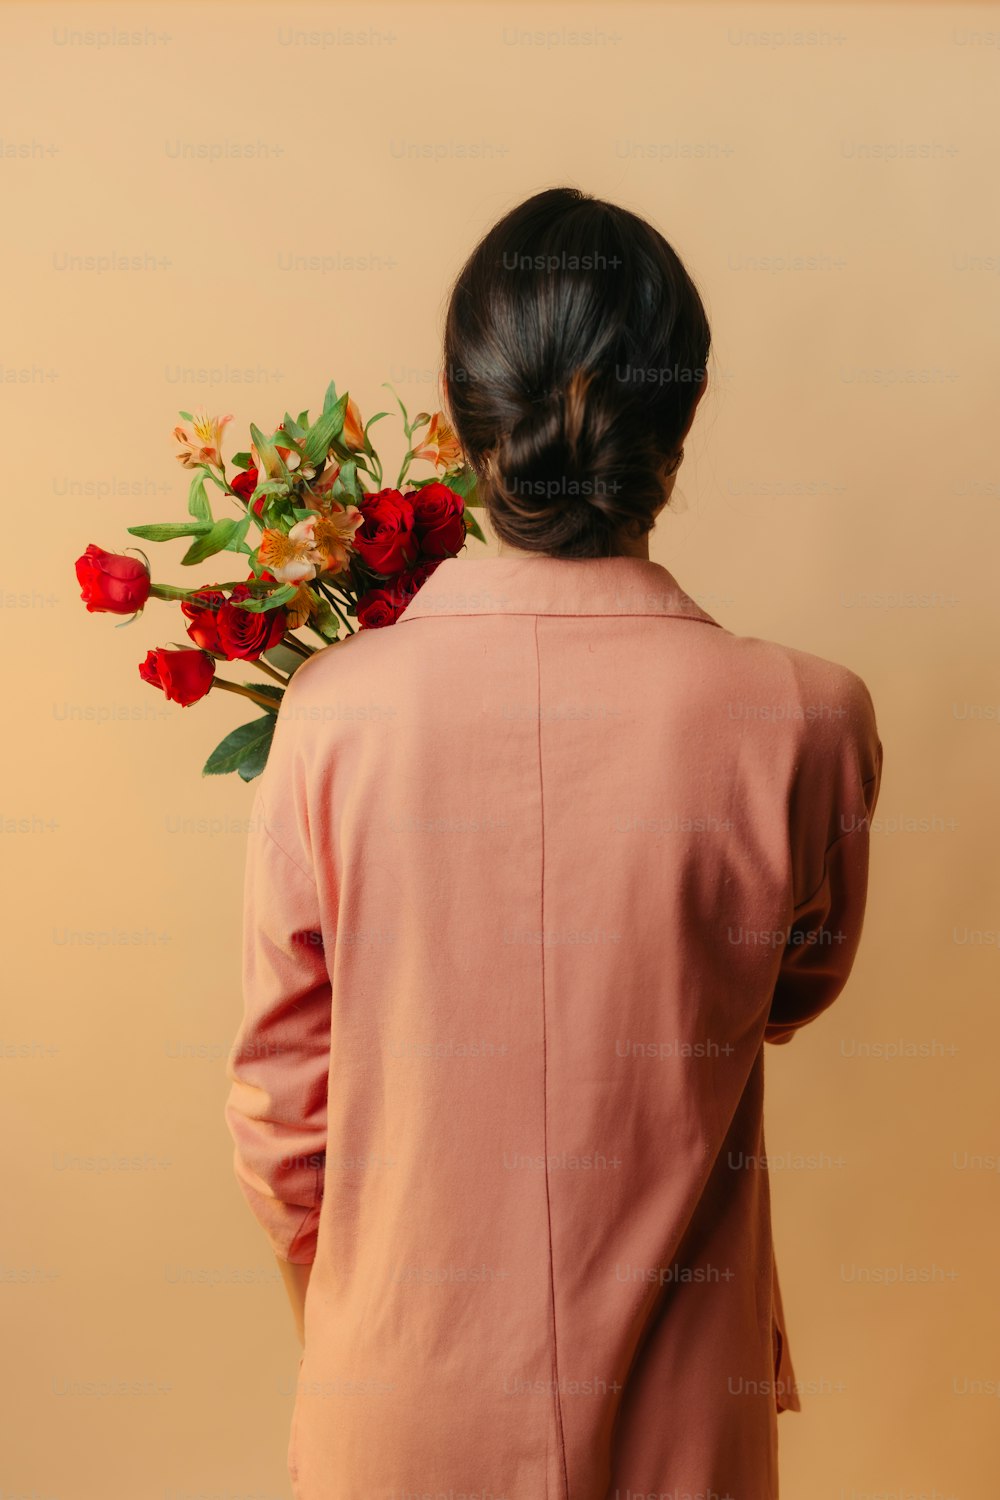 una mujer con una chaqueta rosa sosteniendo un ramo de flores